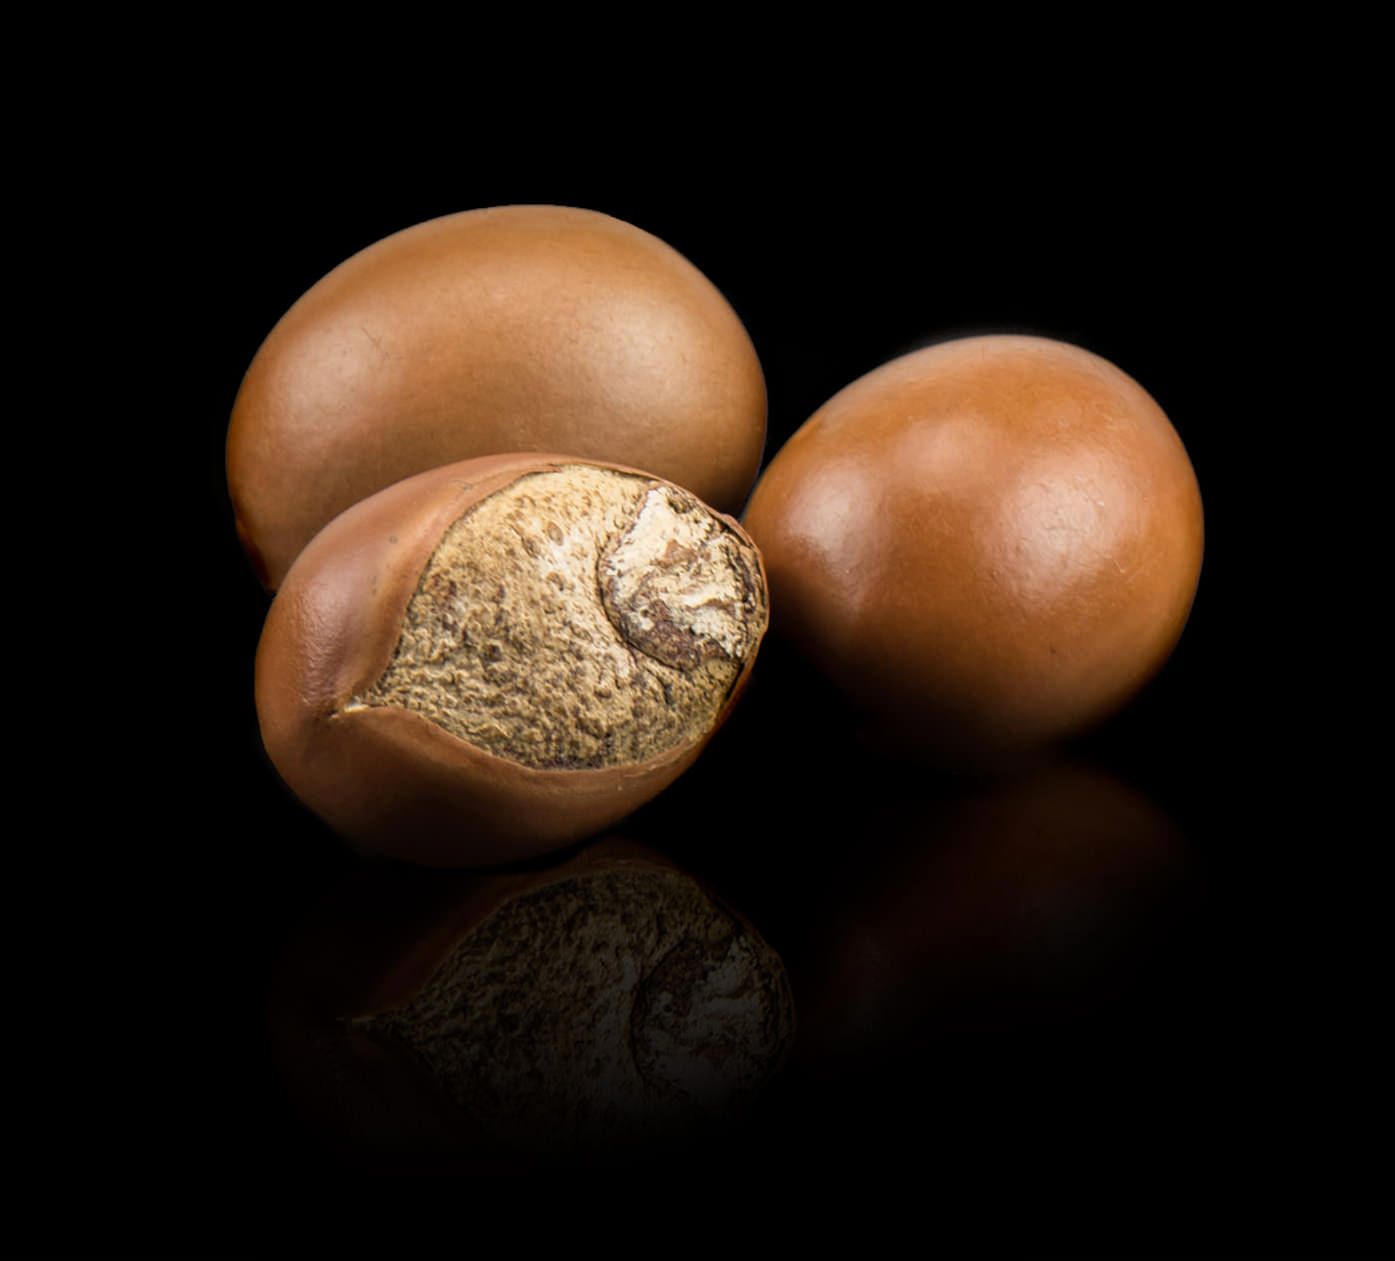 Nilotica nuts